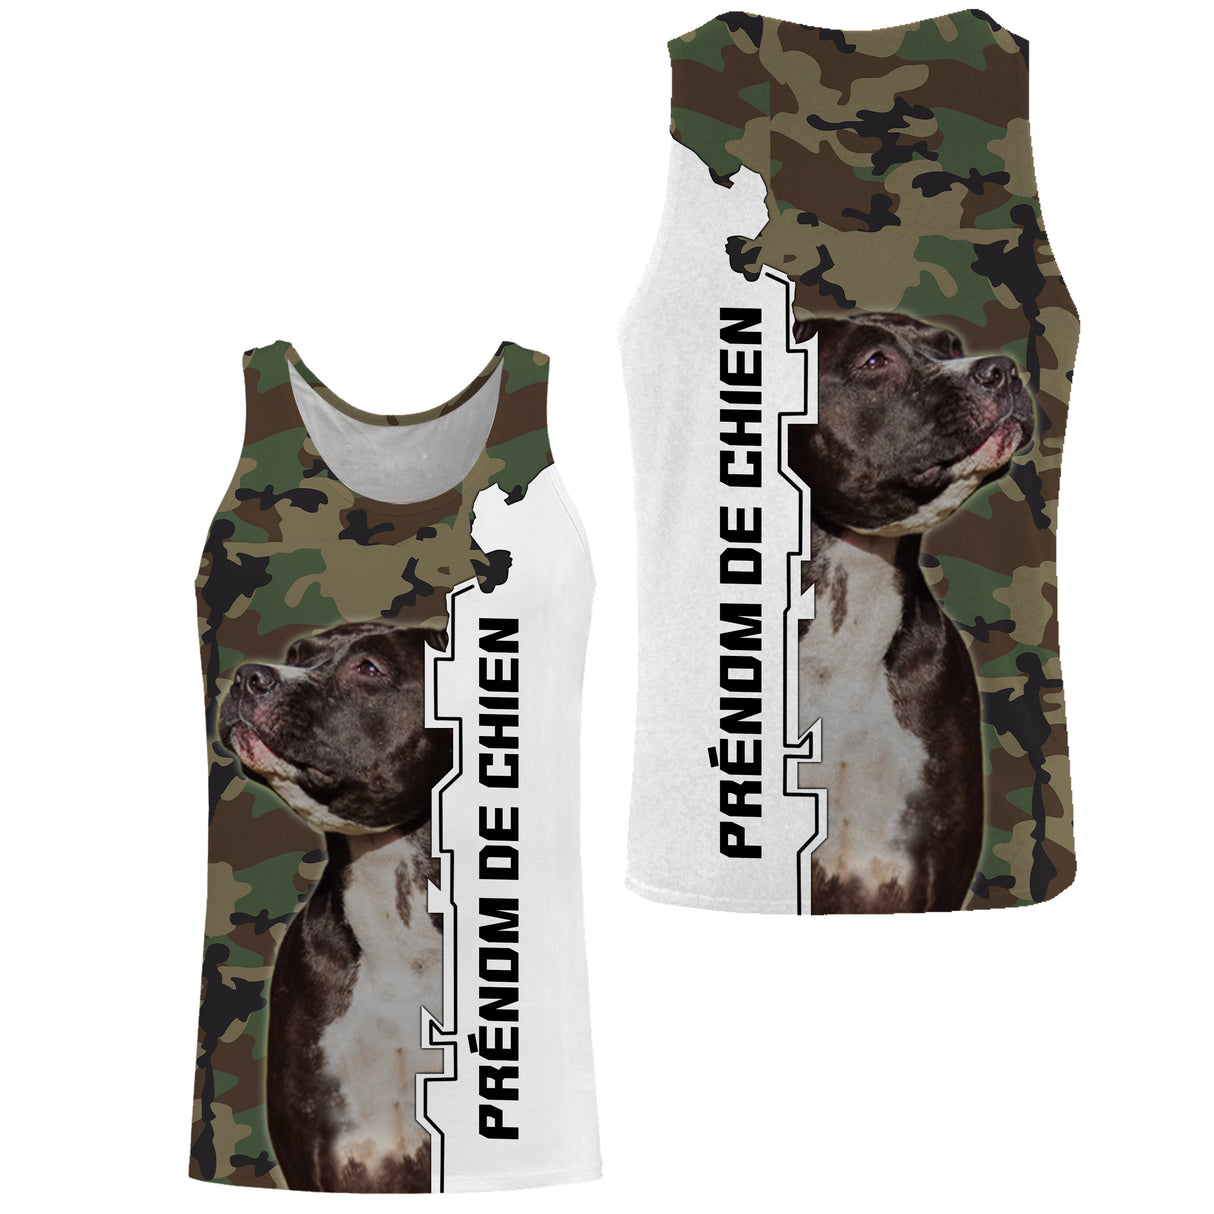 Staffordshire Bull Terrier, razza canina originaria dell'Inghilterra, T-shirt, felpa con cappuccio per uomo, donna, regalo personalizzato - CTS14042214